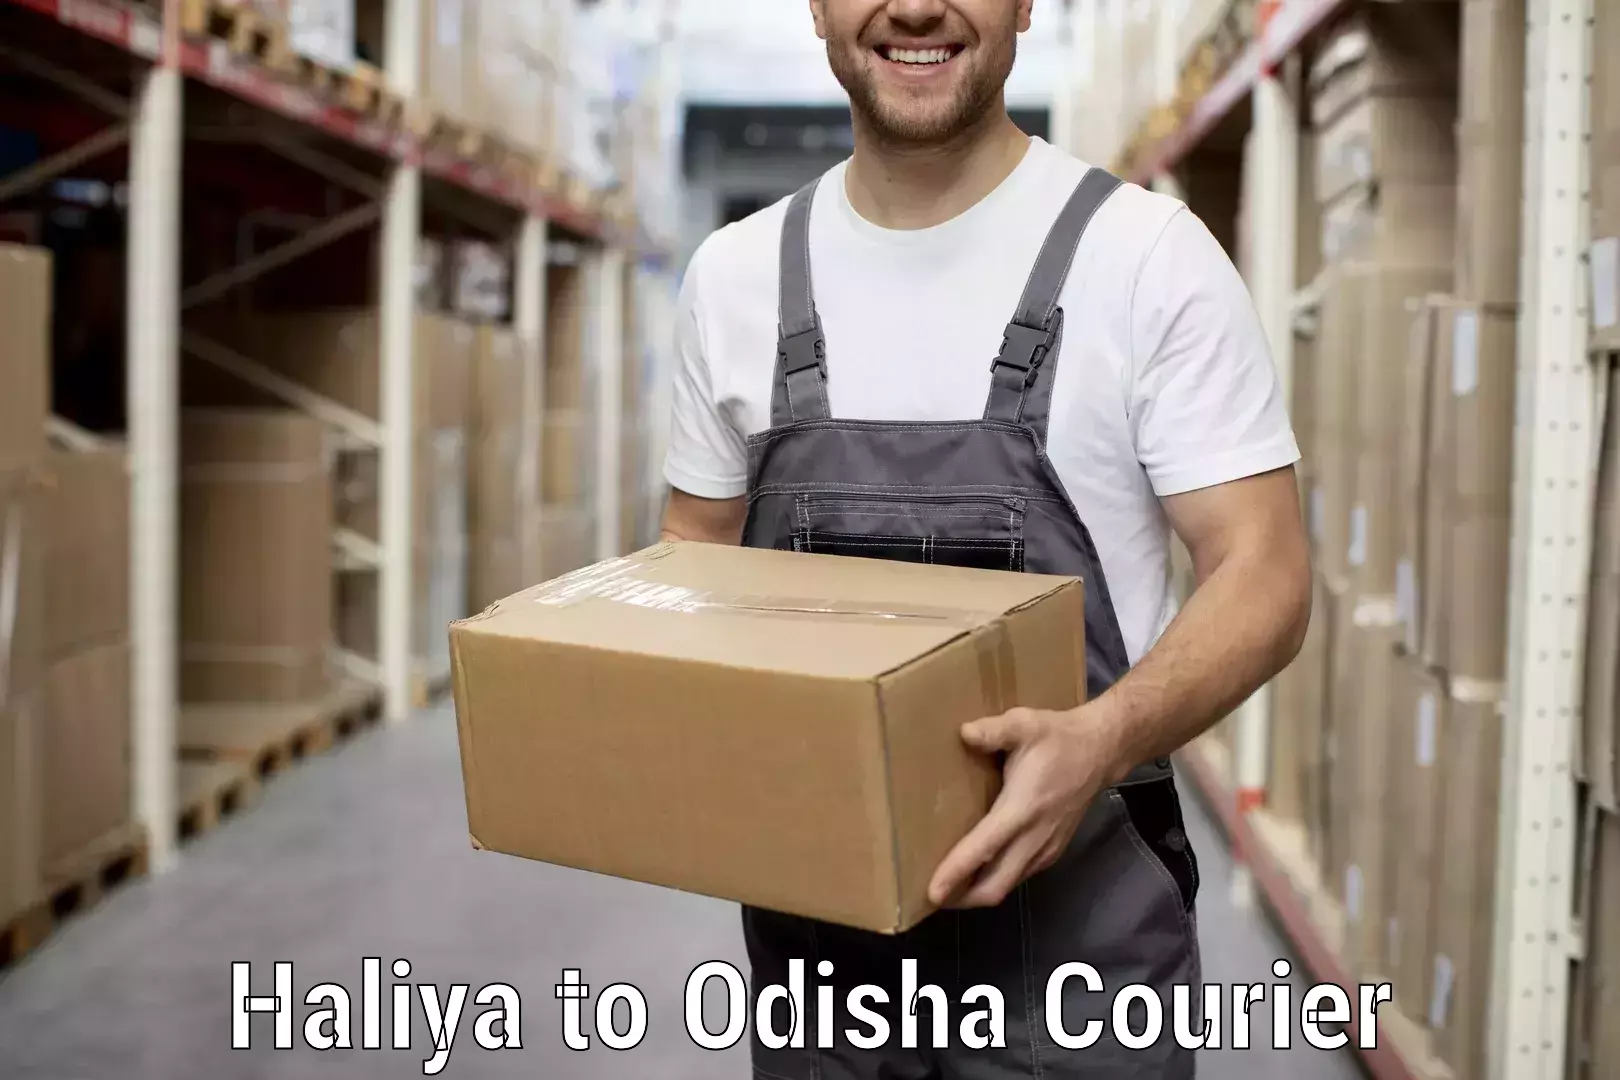 Specialized moving company Haliya to Mathili